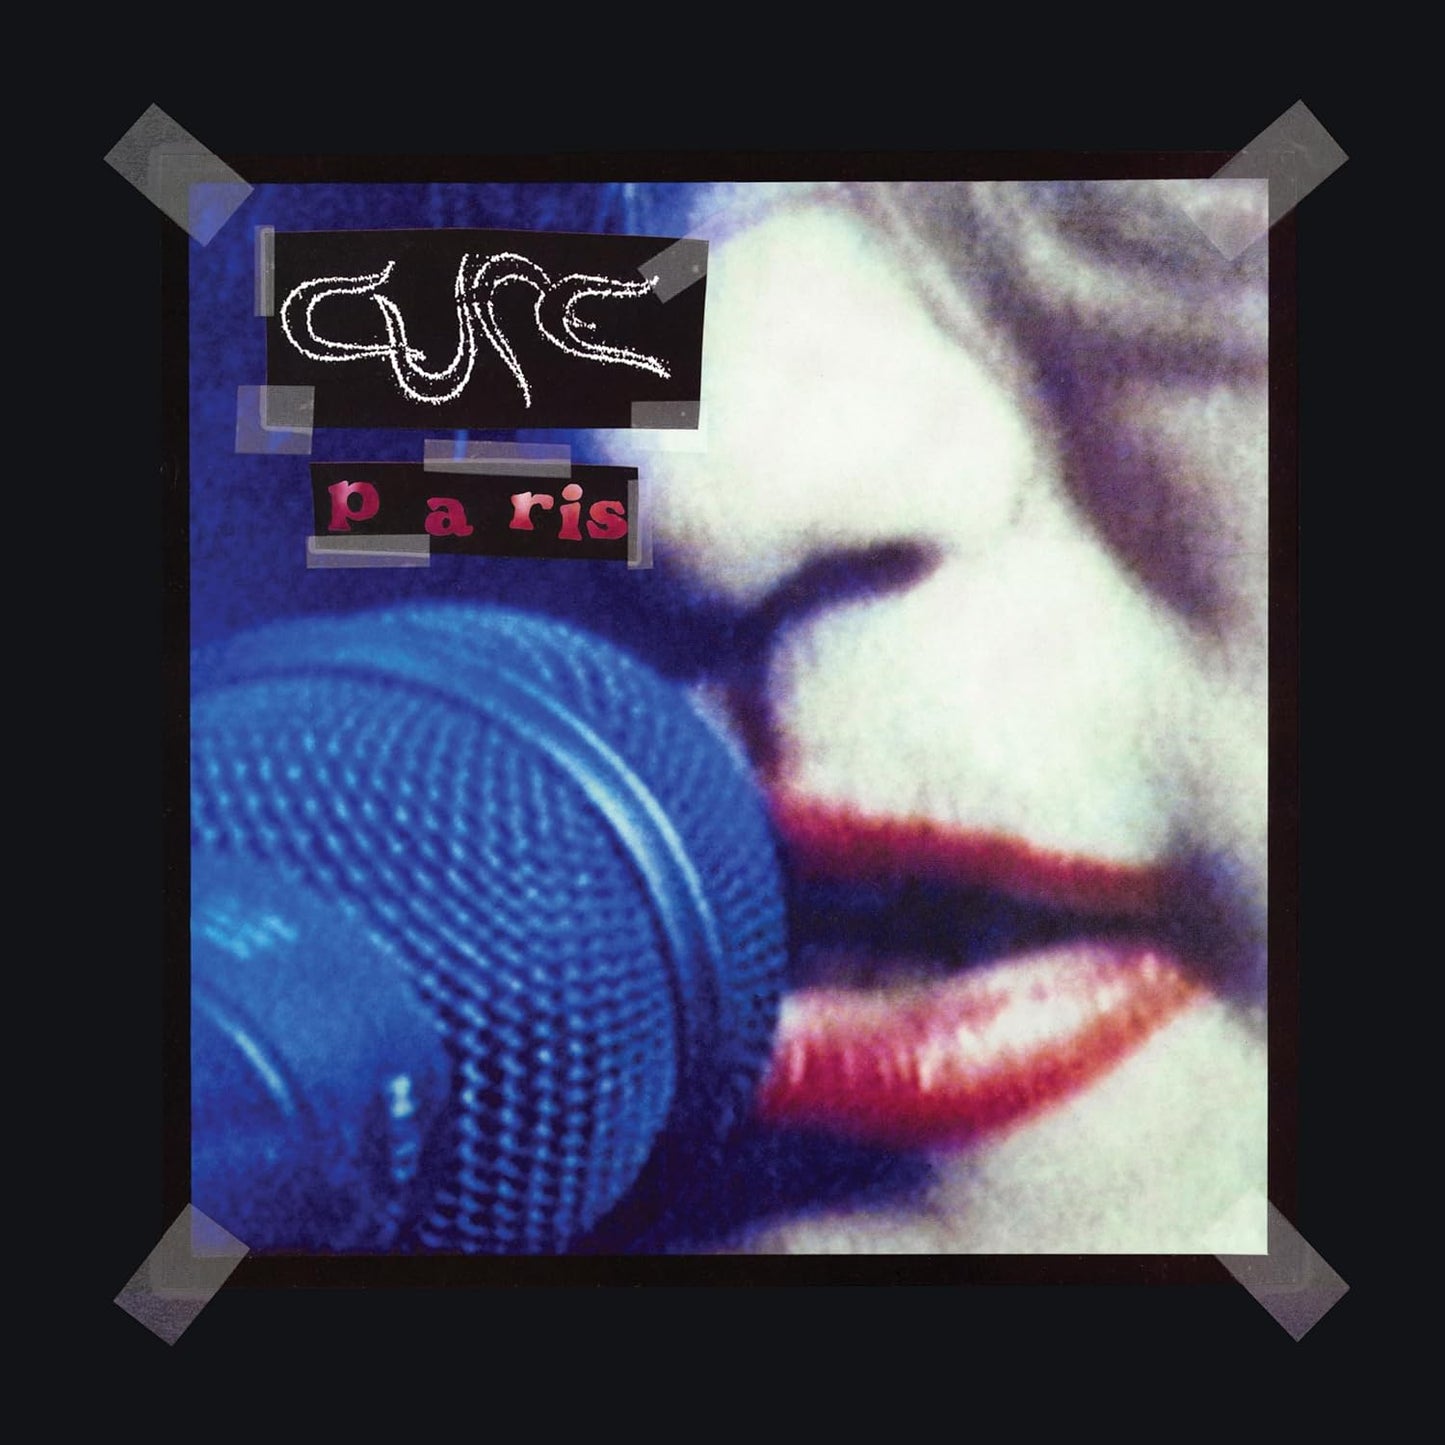 CD - The Cure - Paris